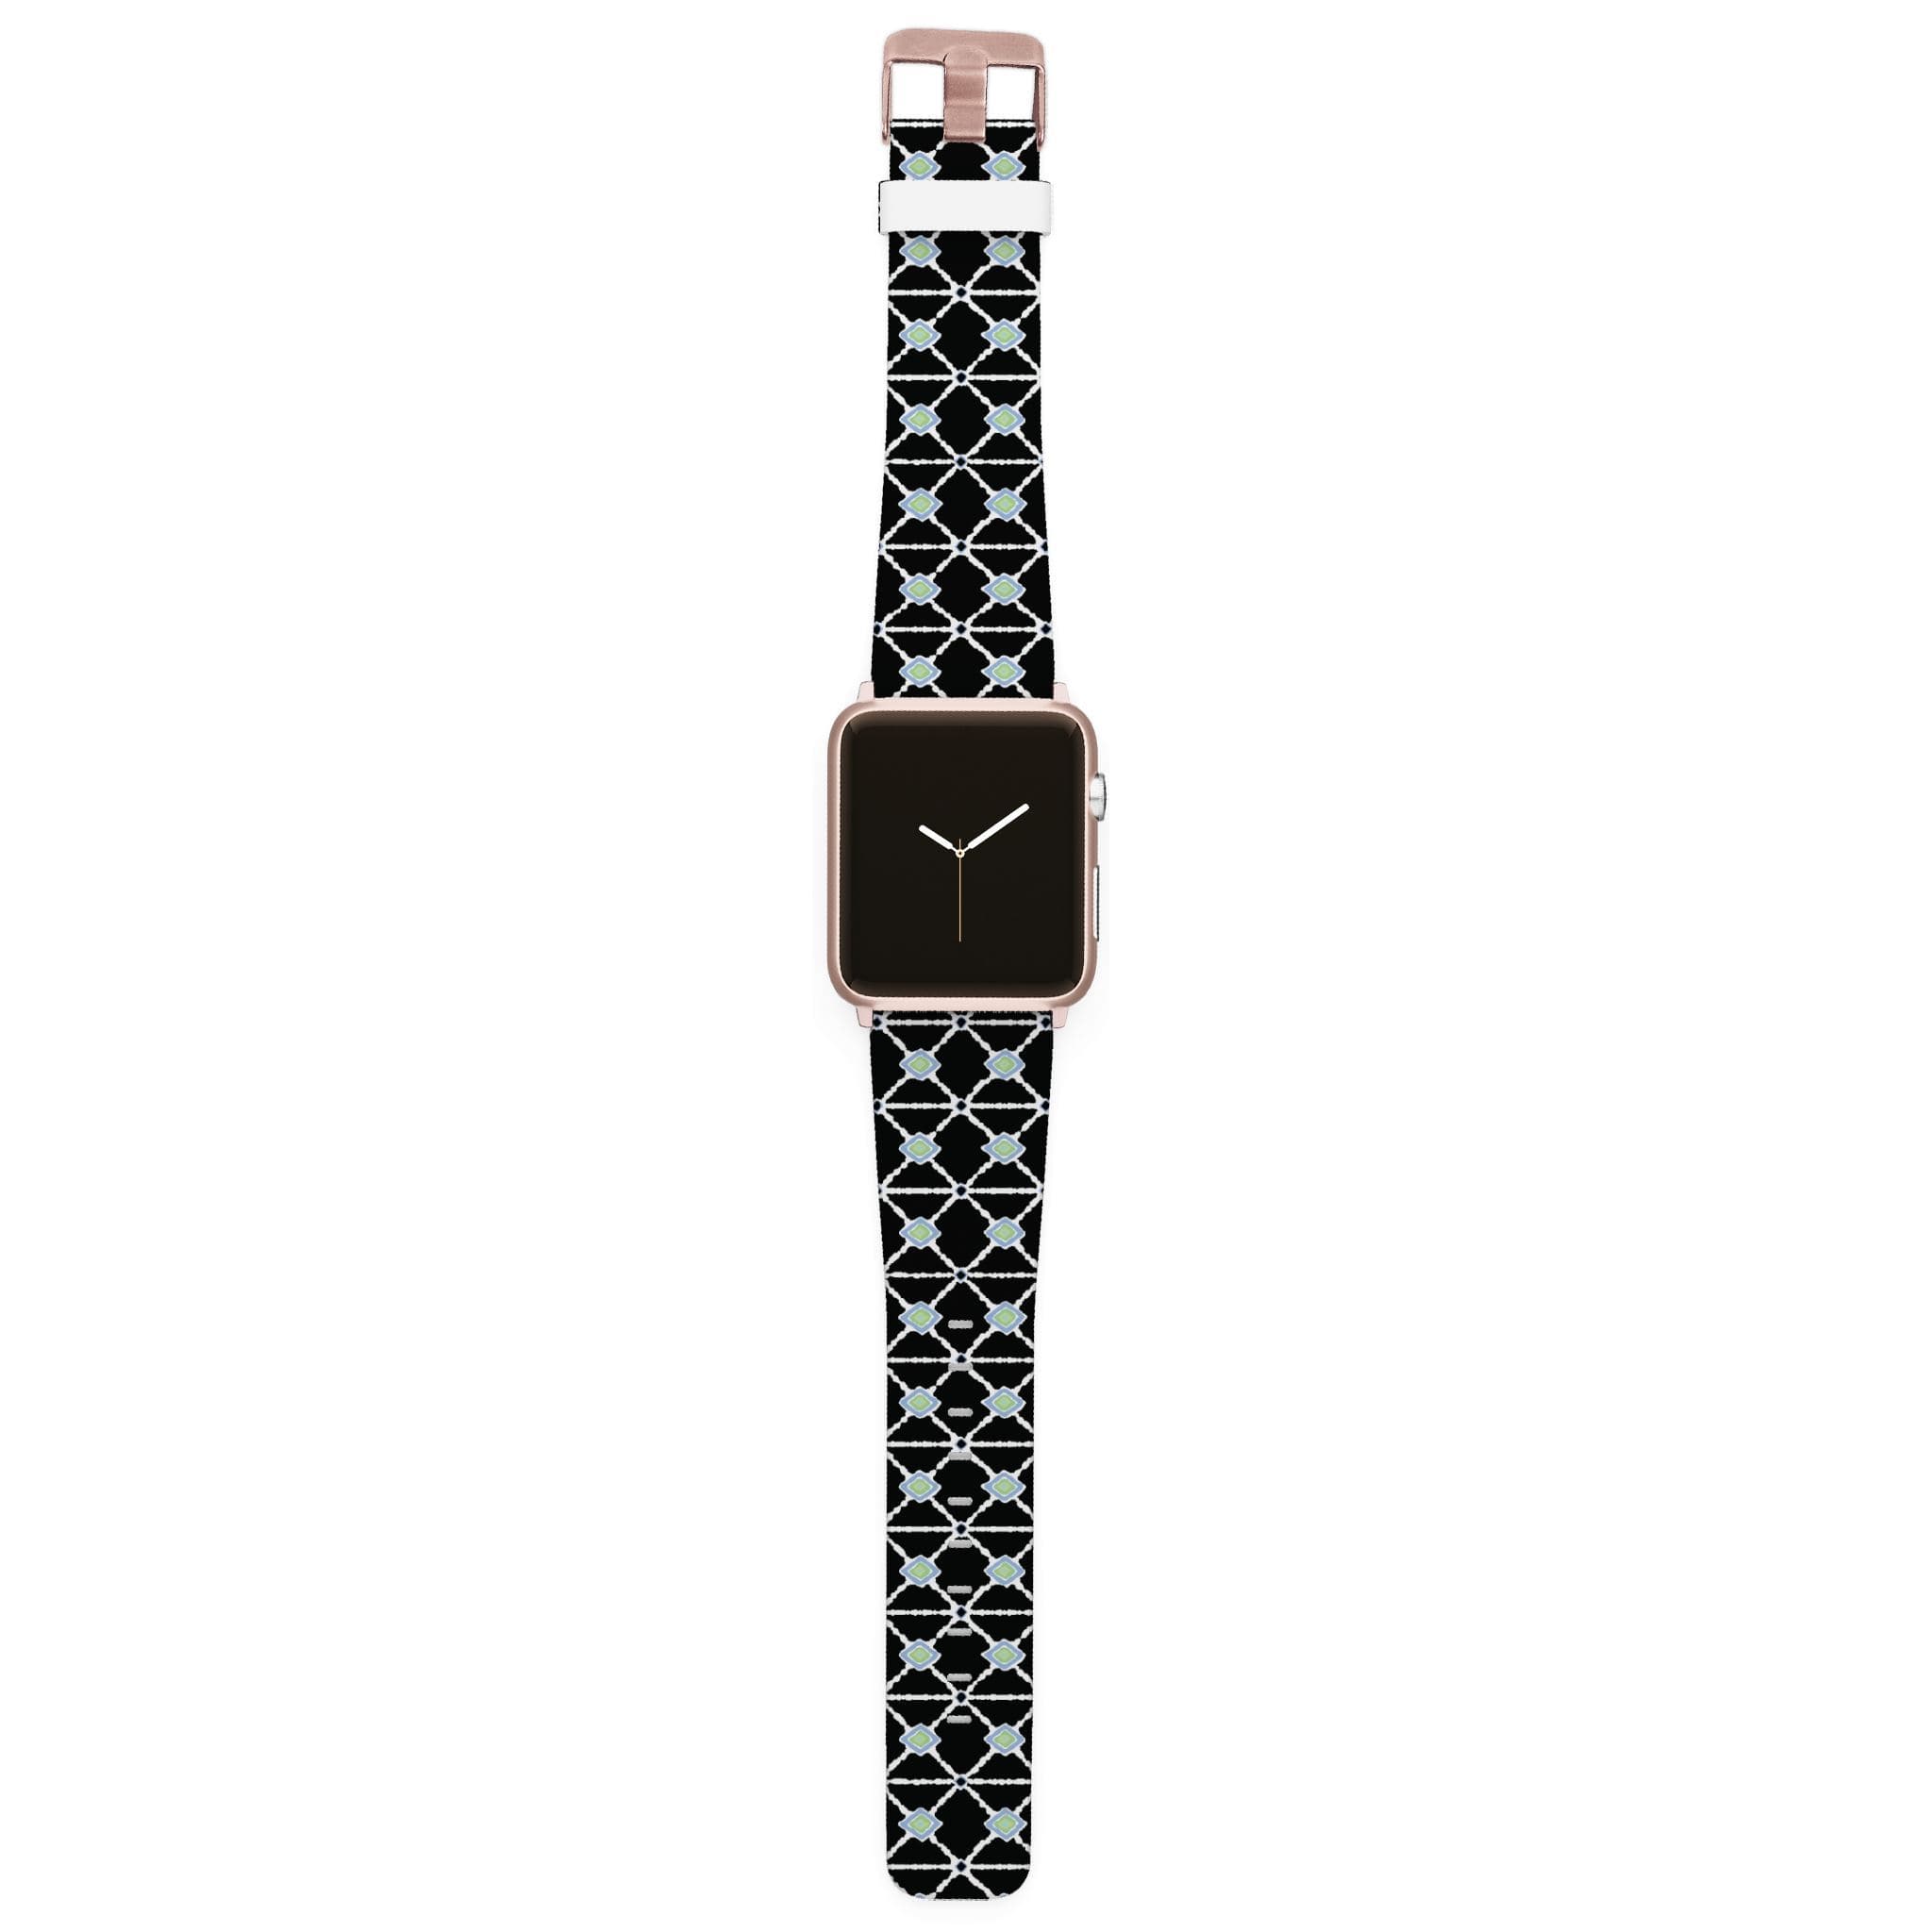 Spunkwear - Bamboo Apple Watch Band Apple Watch Band C4 BELTS